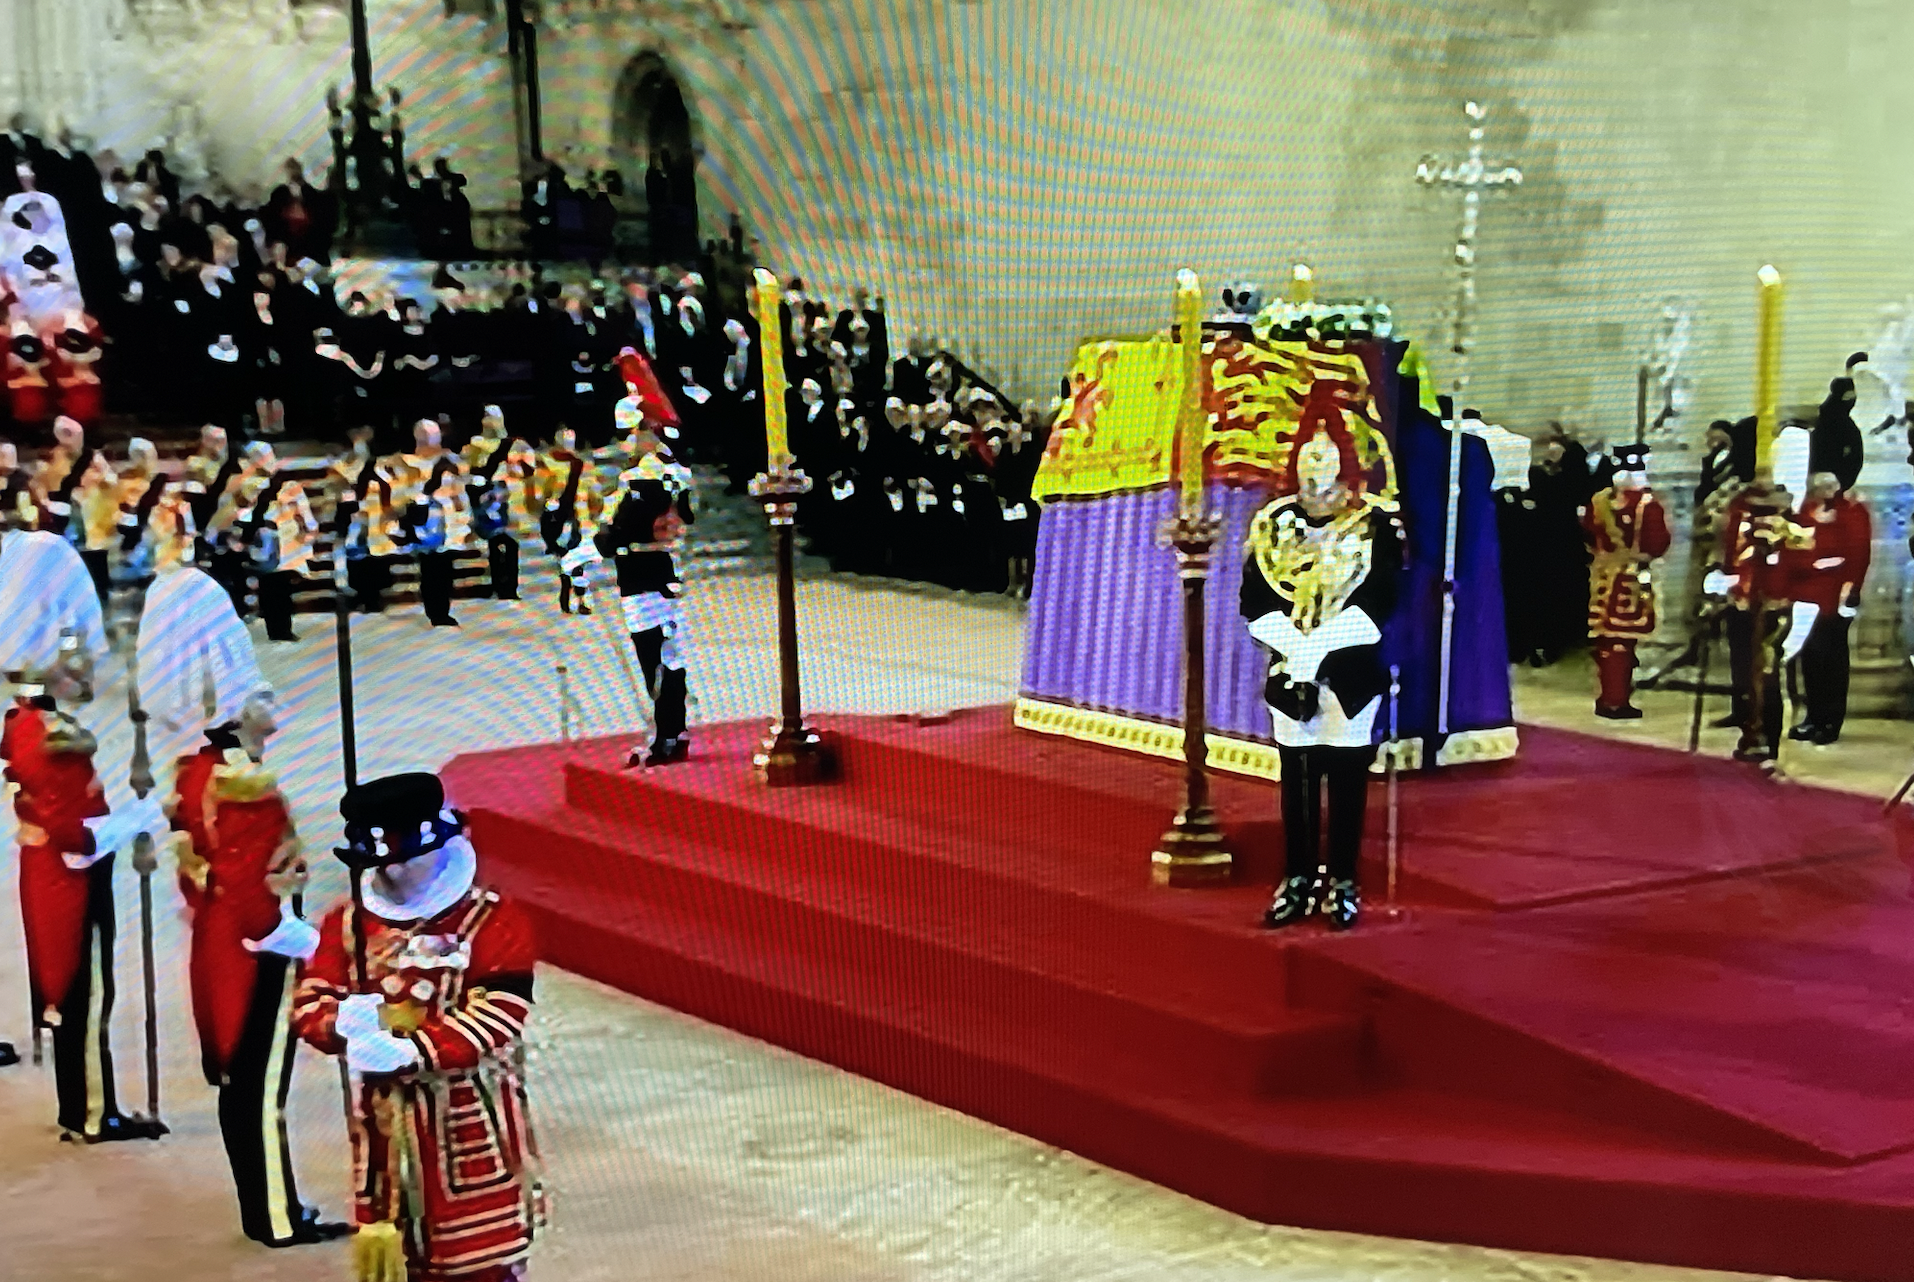 Queen Elizabeth's coffin vigil by guards